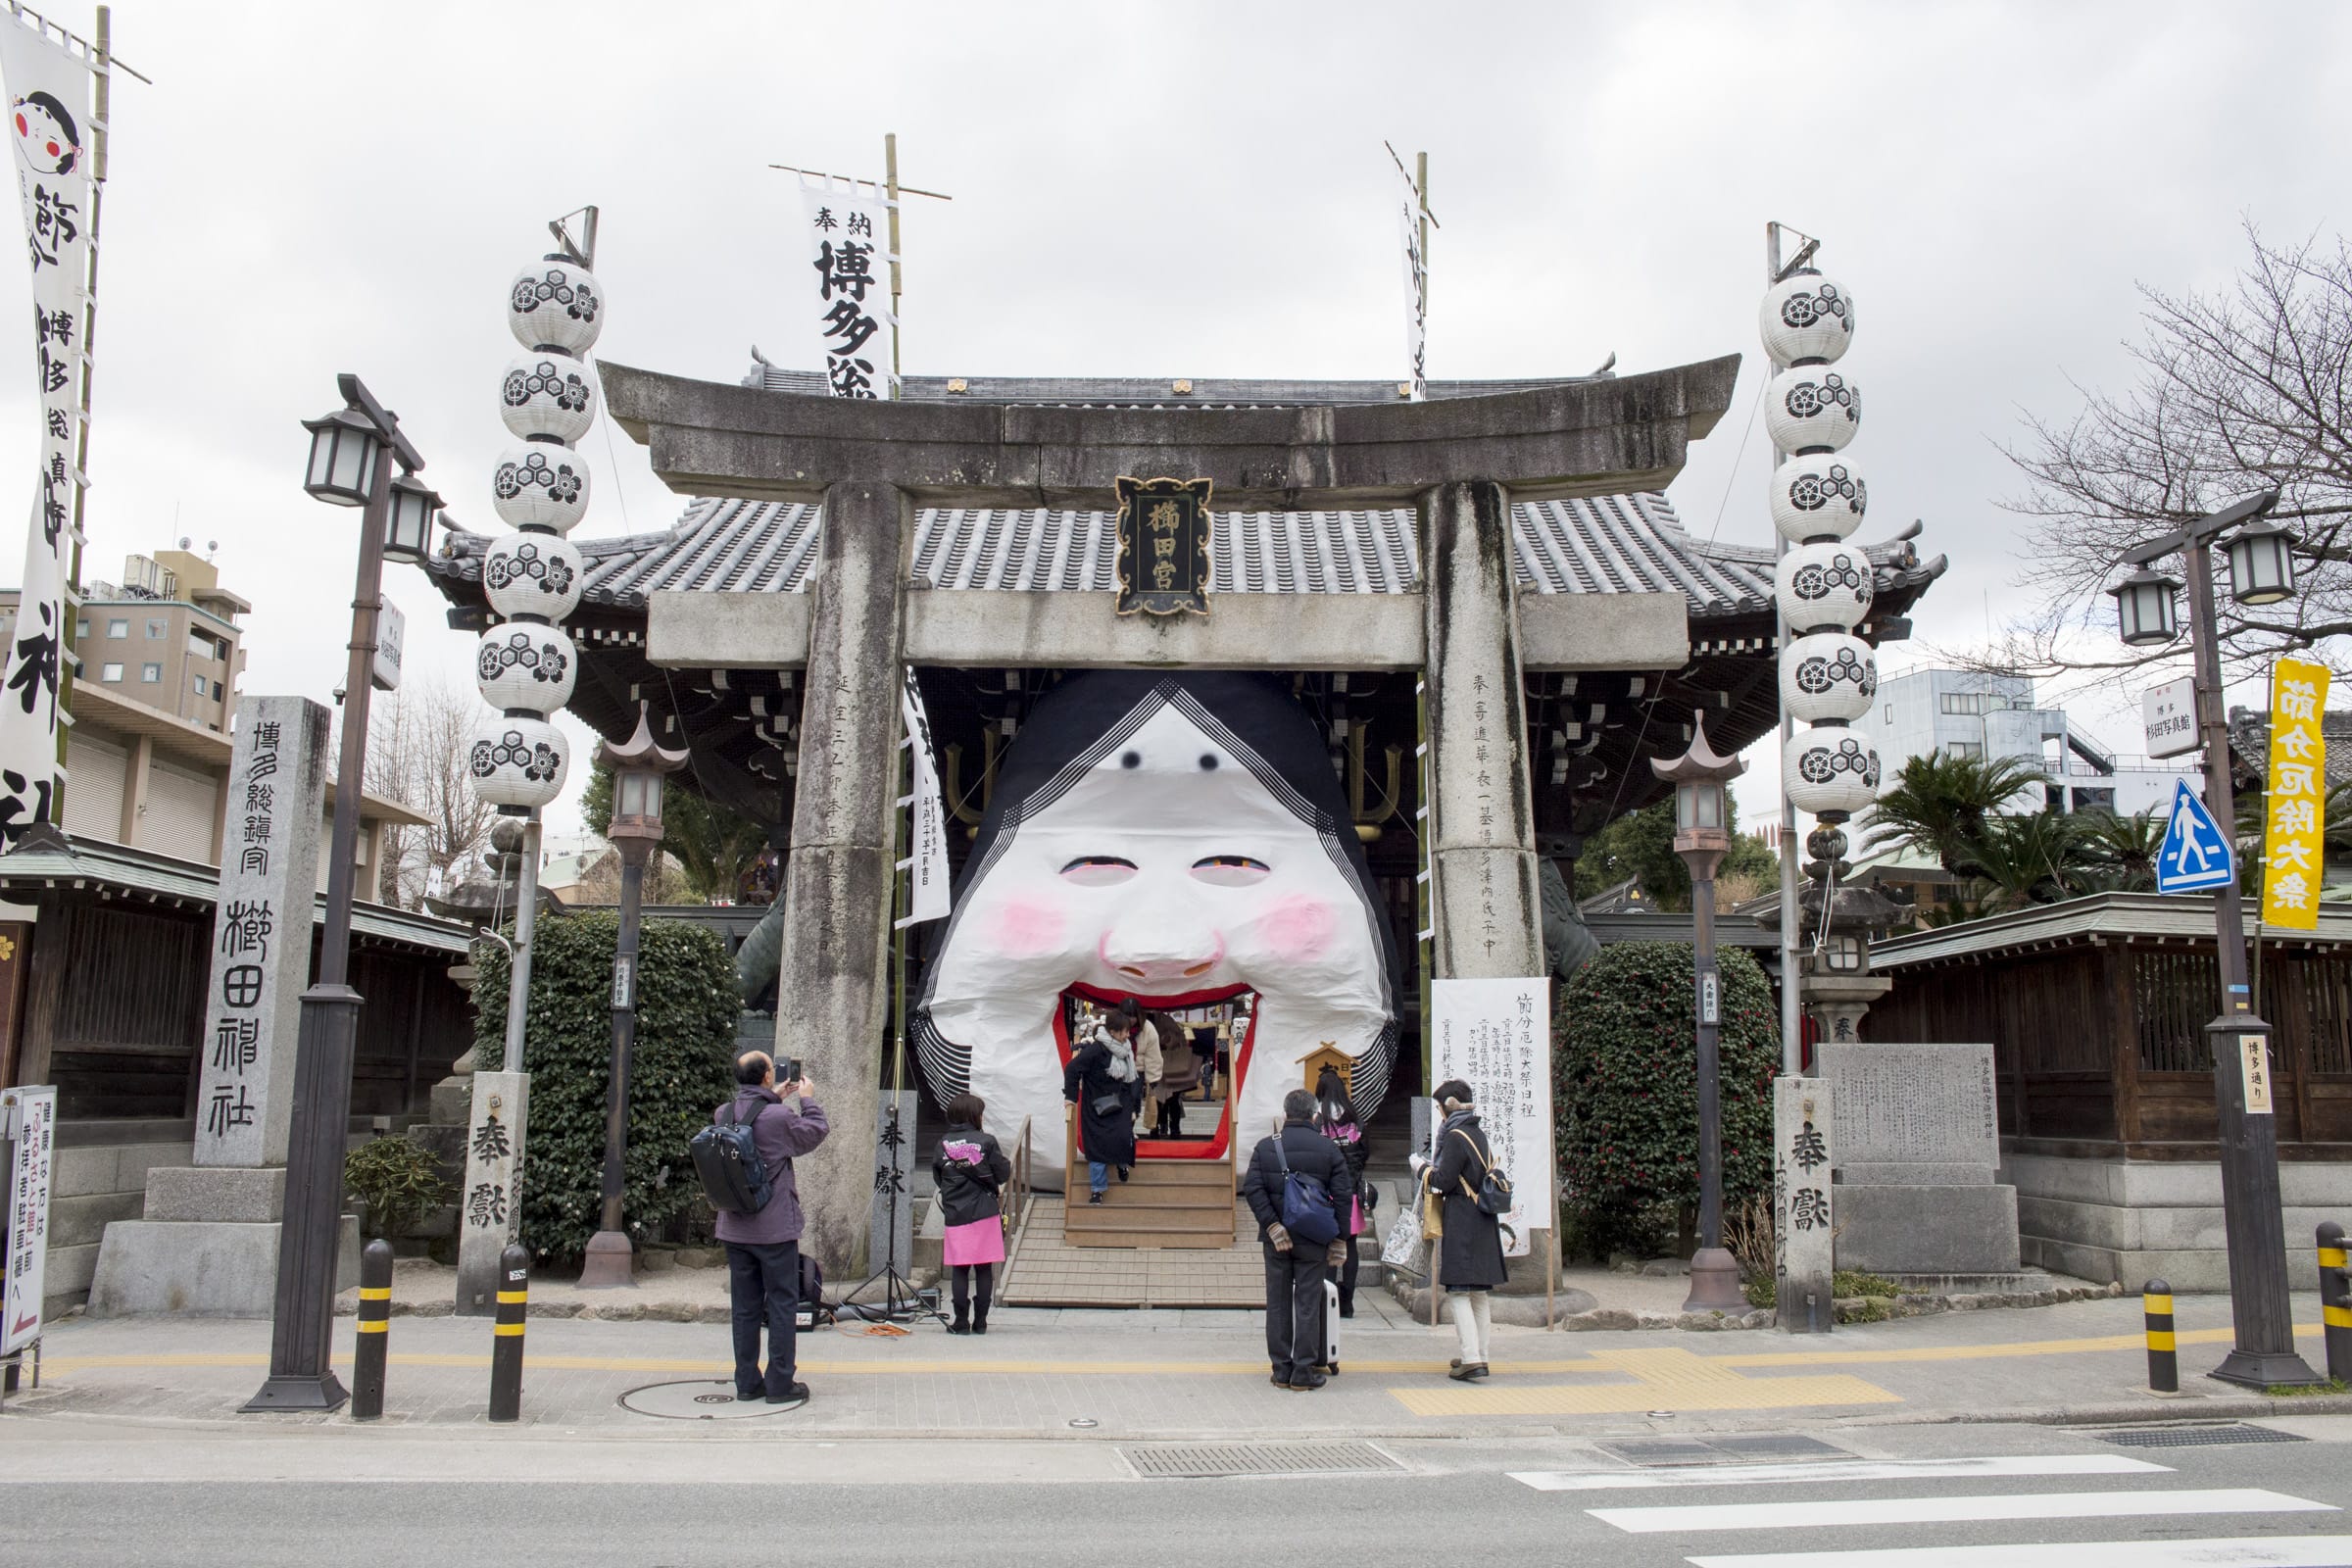 櫛田神社。ちょうど節分大祭の前で、日本一大きいといわれるお多福面が飾られている。